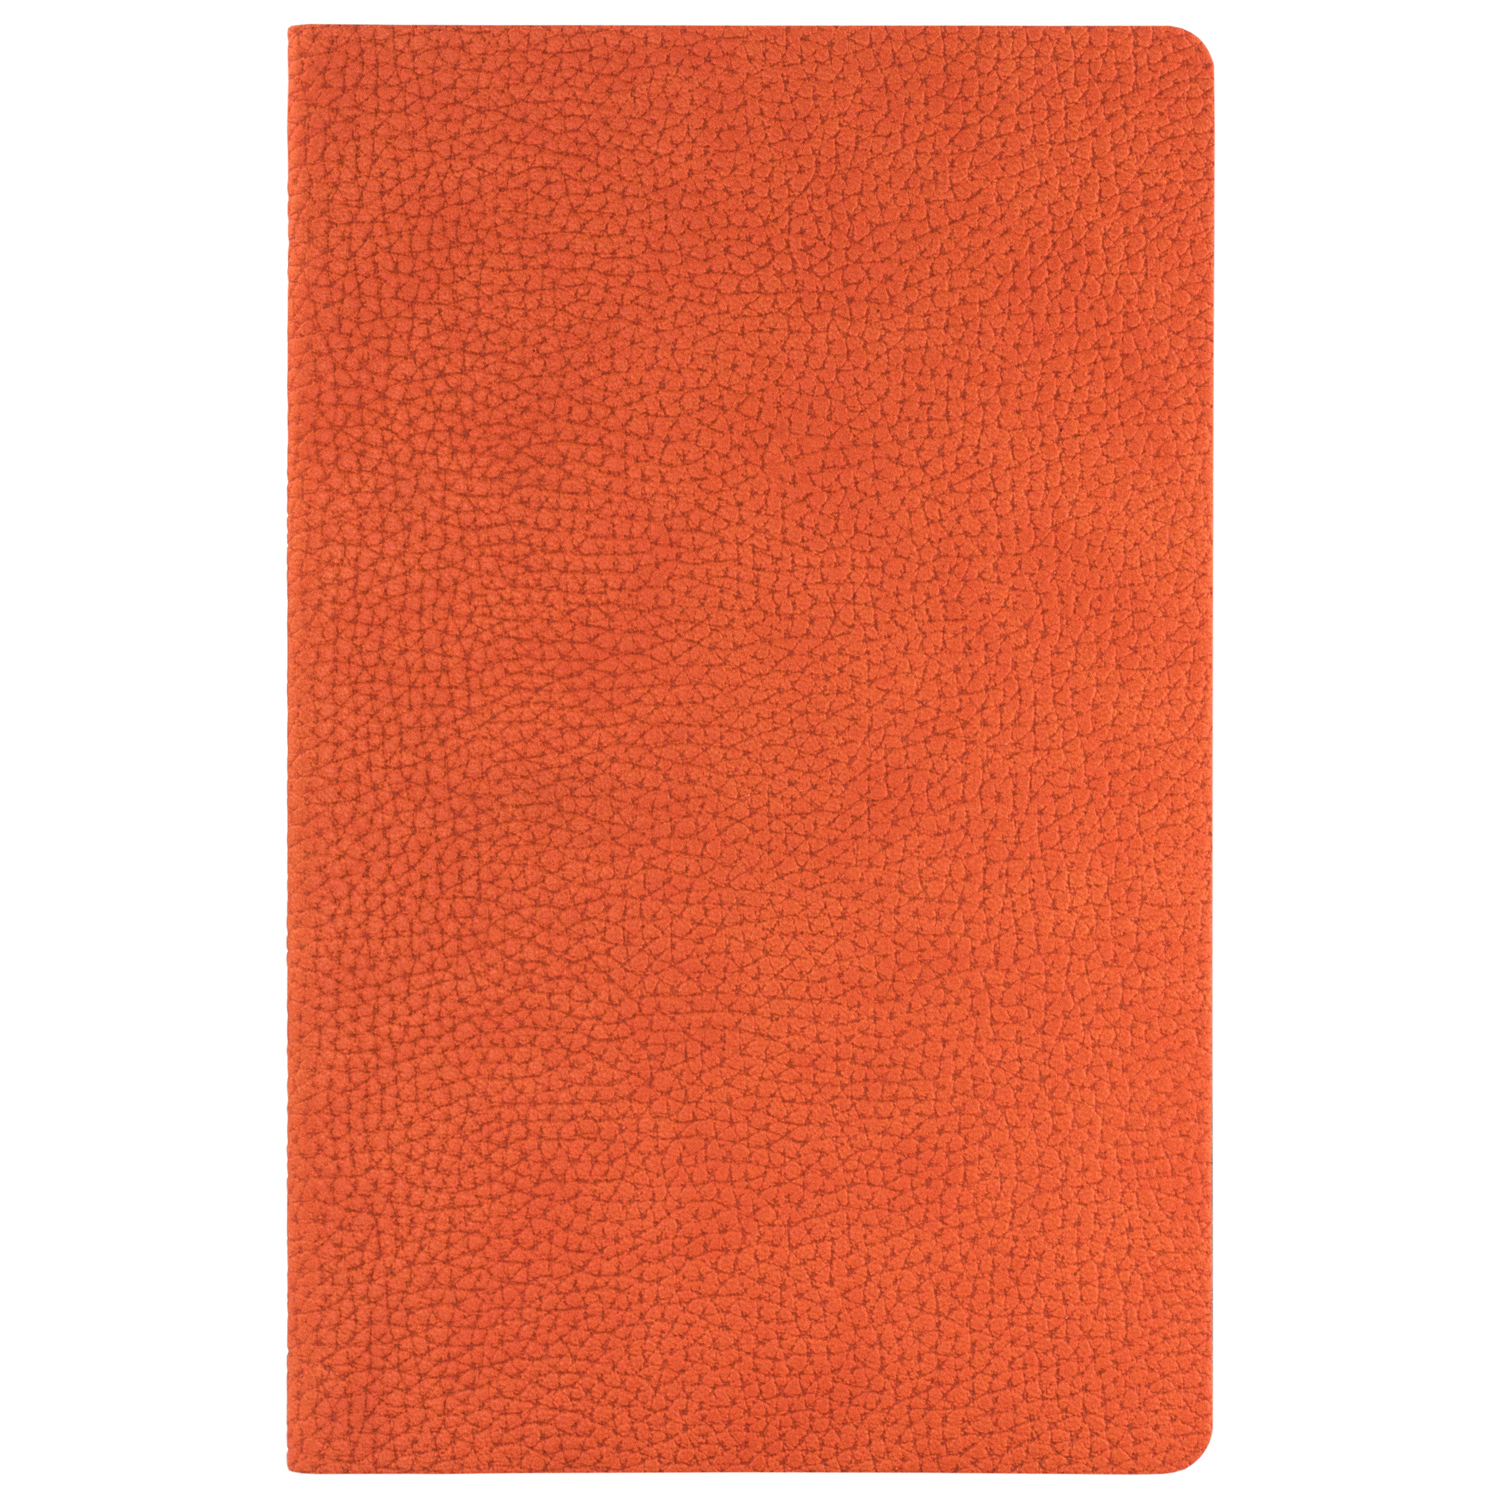 Ежедневник Portobello Lite, Slimbook, Dallas, 112 стр. без печати, оранжевый